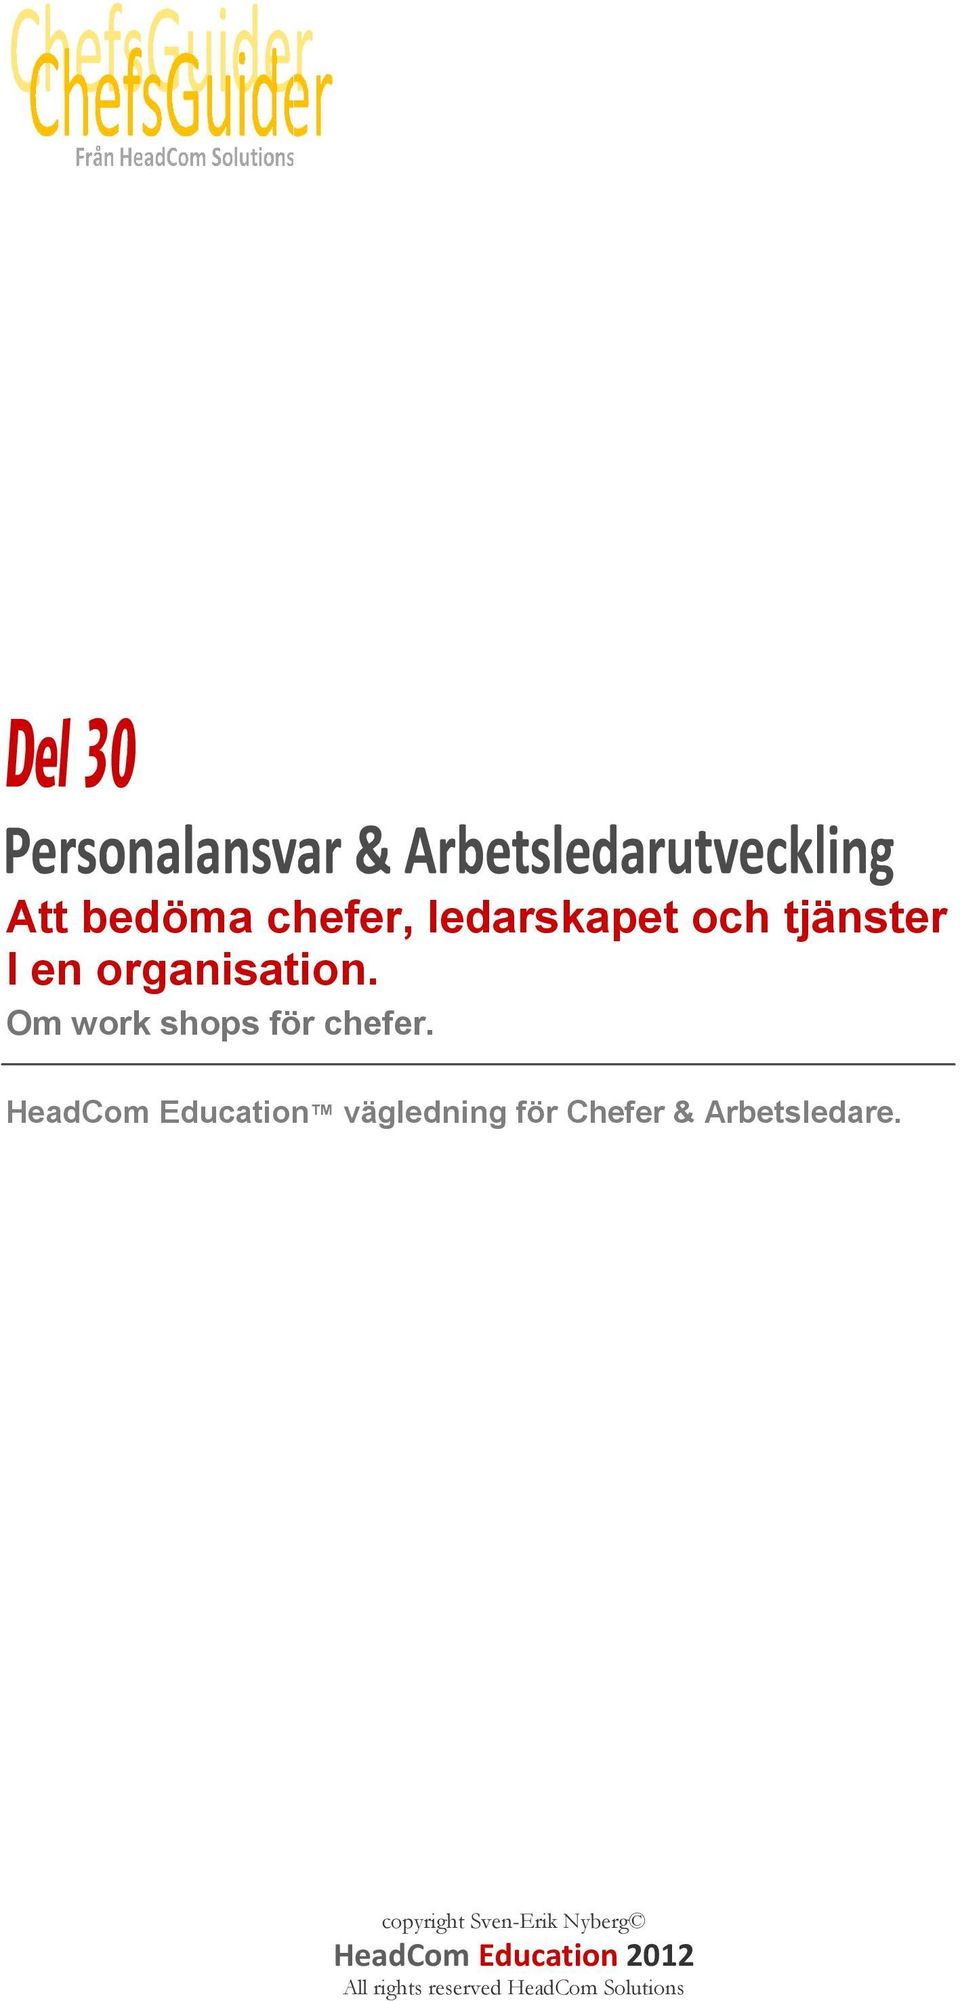 HeadCom Education vägledning för Chefer & Arbetsledare.